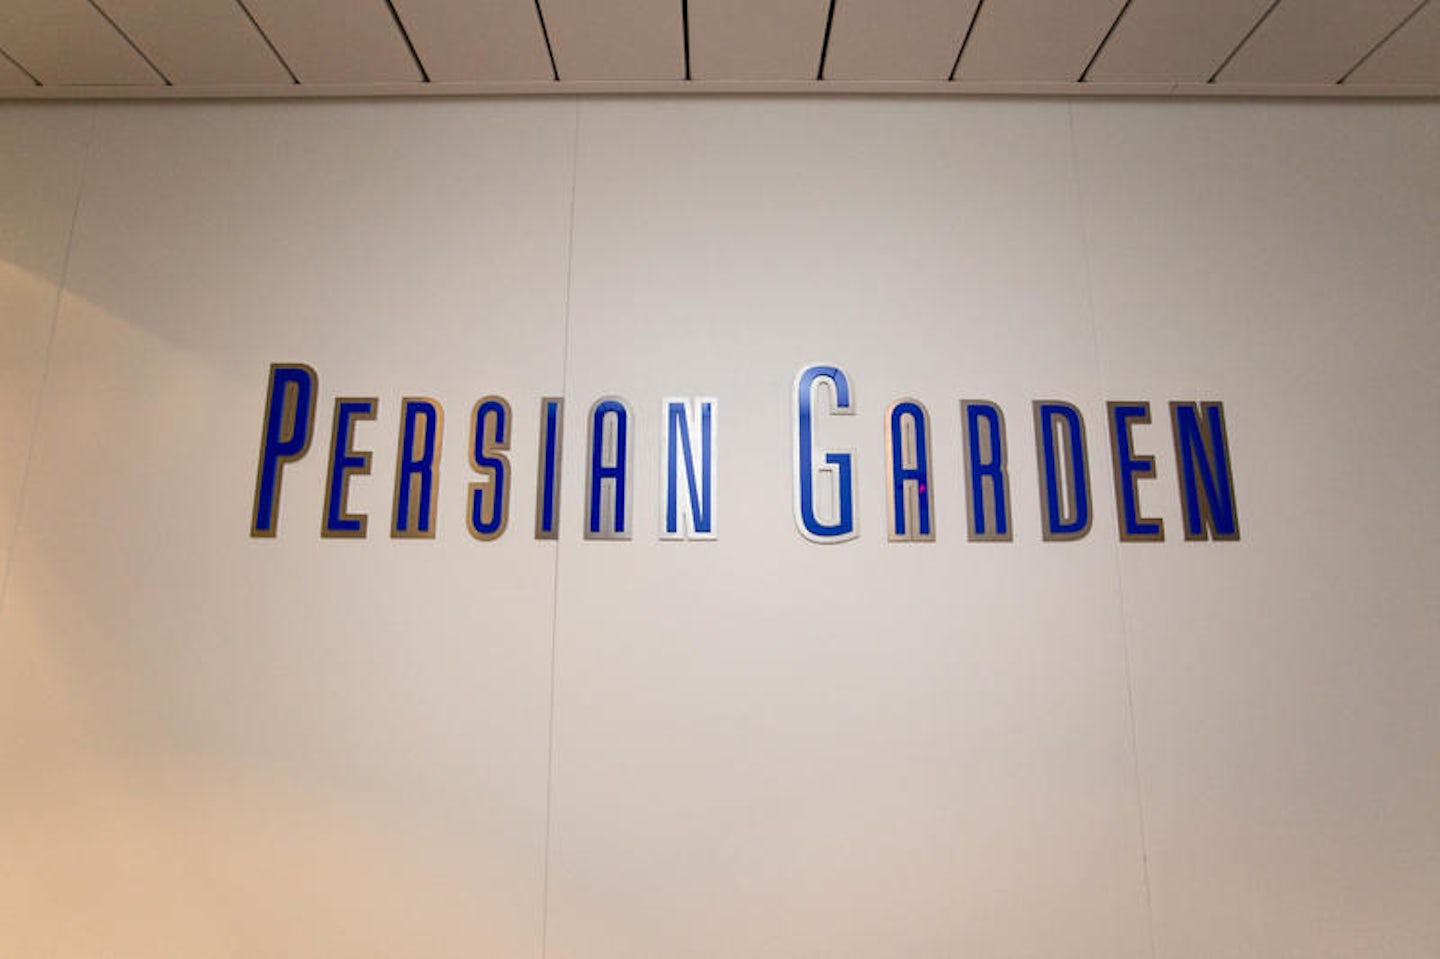 Persian Garden on Celebrity Solstice